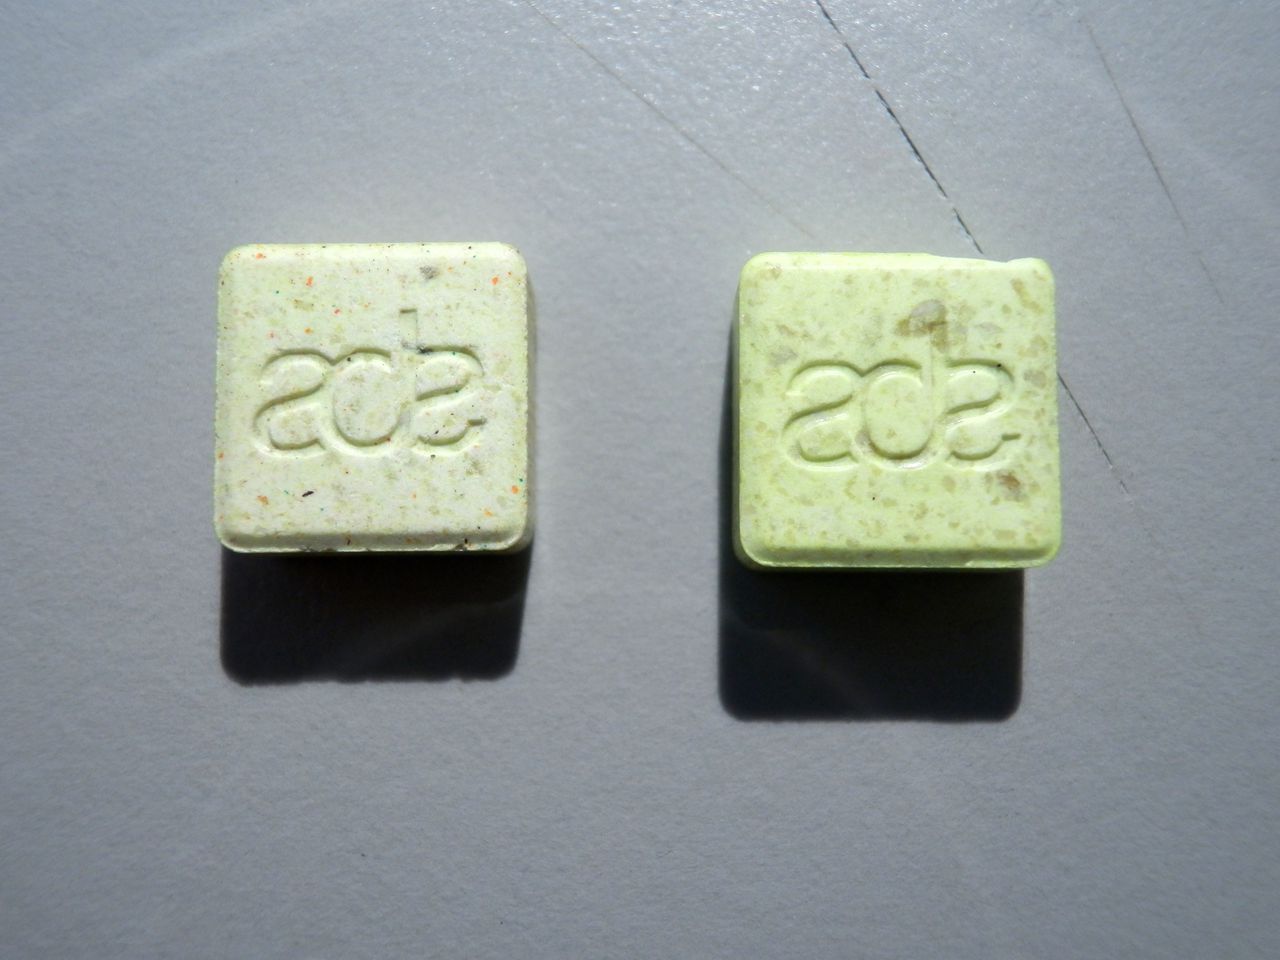 Een xtc-pil met een ADE-logo, dat refereert aan het Amsterdam Dance Event. Volgens het Trimbos-instituut kunnen deze tabletten extreem hoge doses MDMA bevatten en zijn ze daardoor levensgevaarlijk.